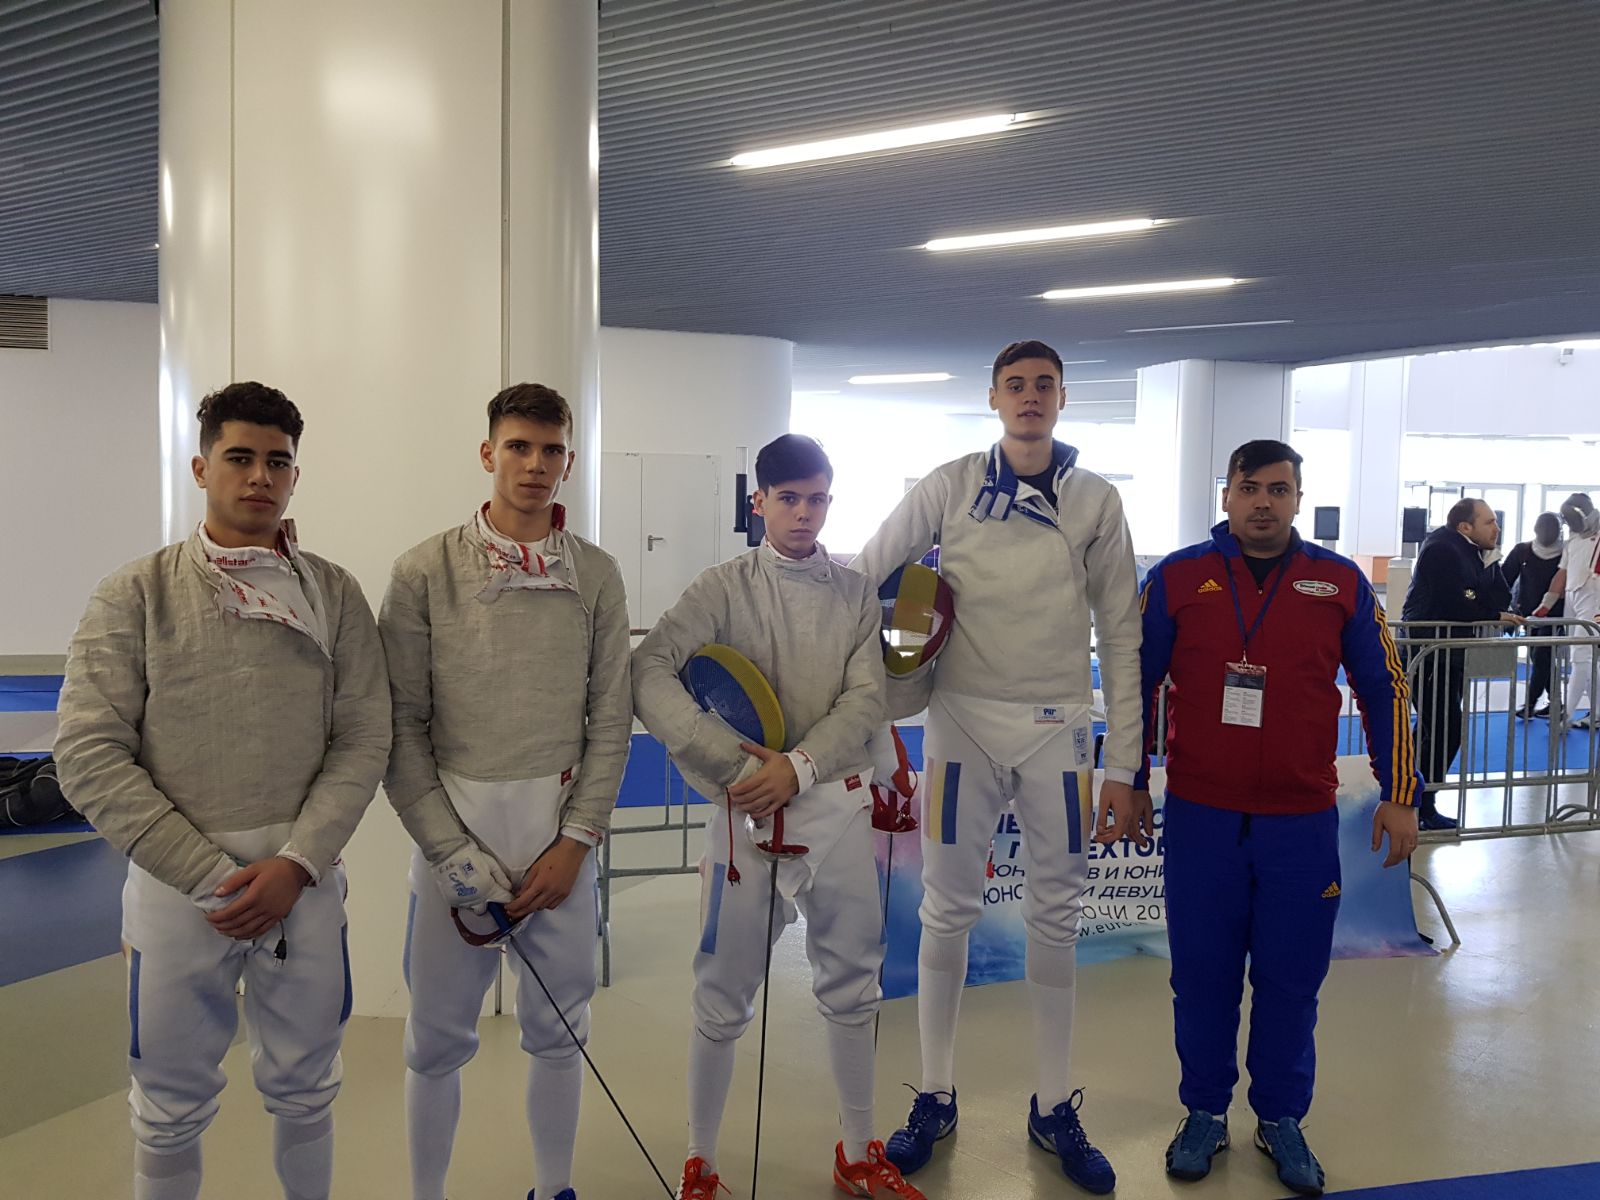 ACUM LIVE: România trage la Campionatul European de la Soci, în proba de sabie juniori masculin echipe